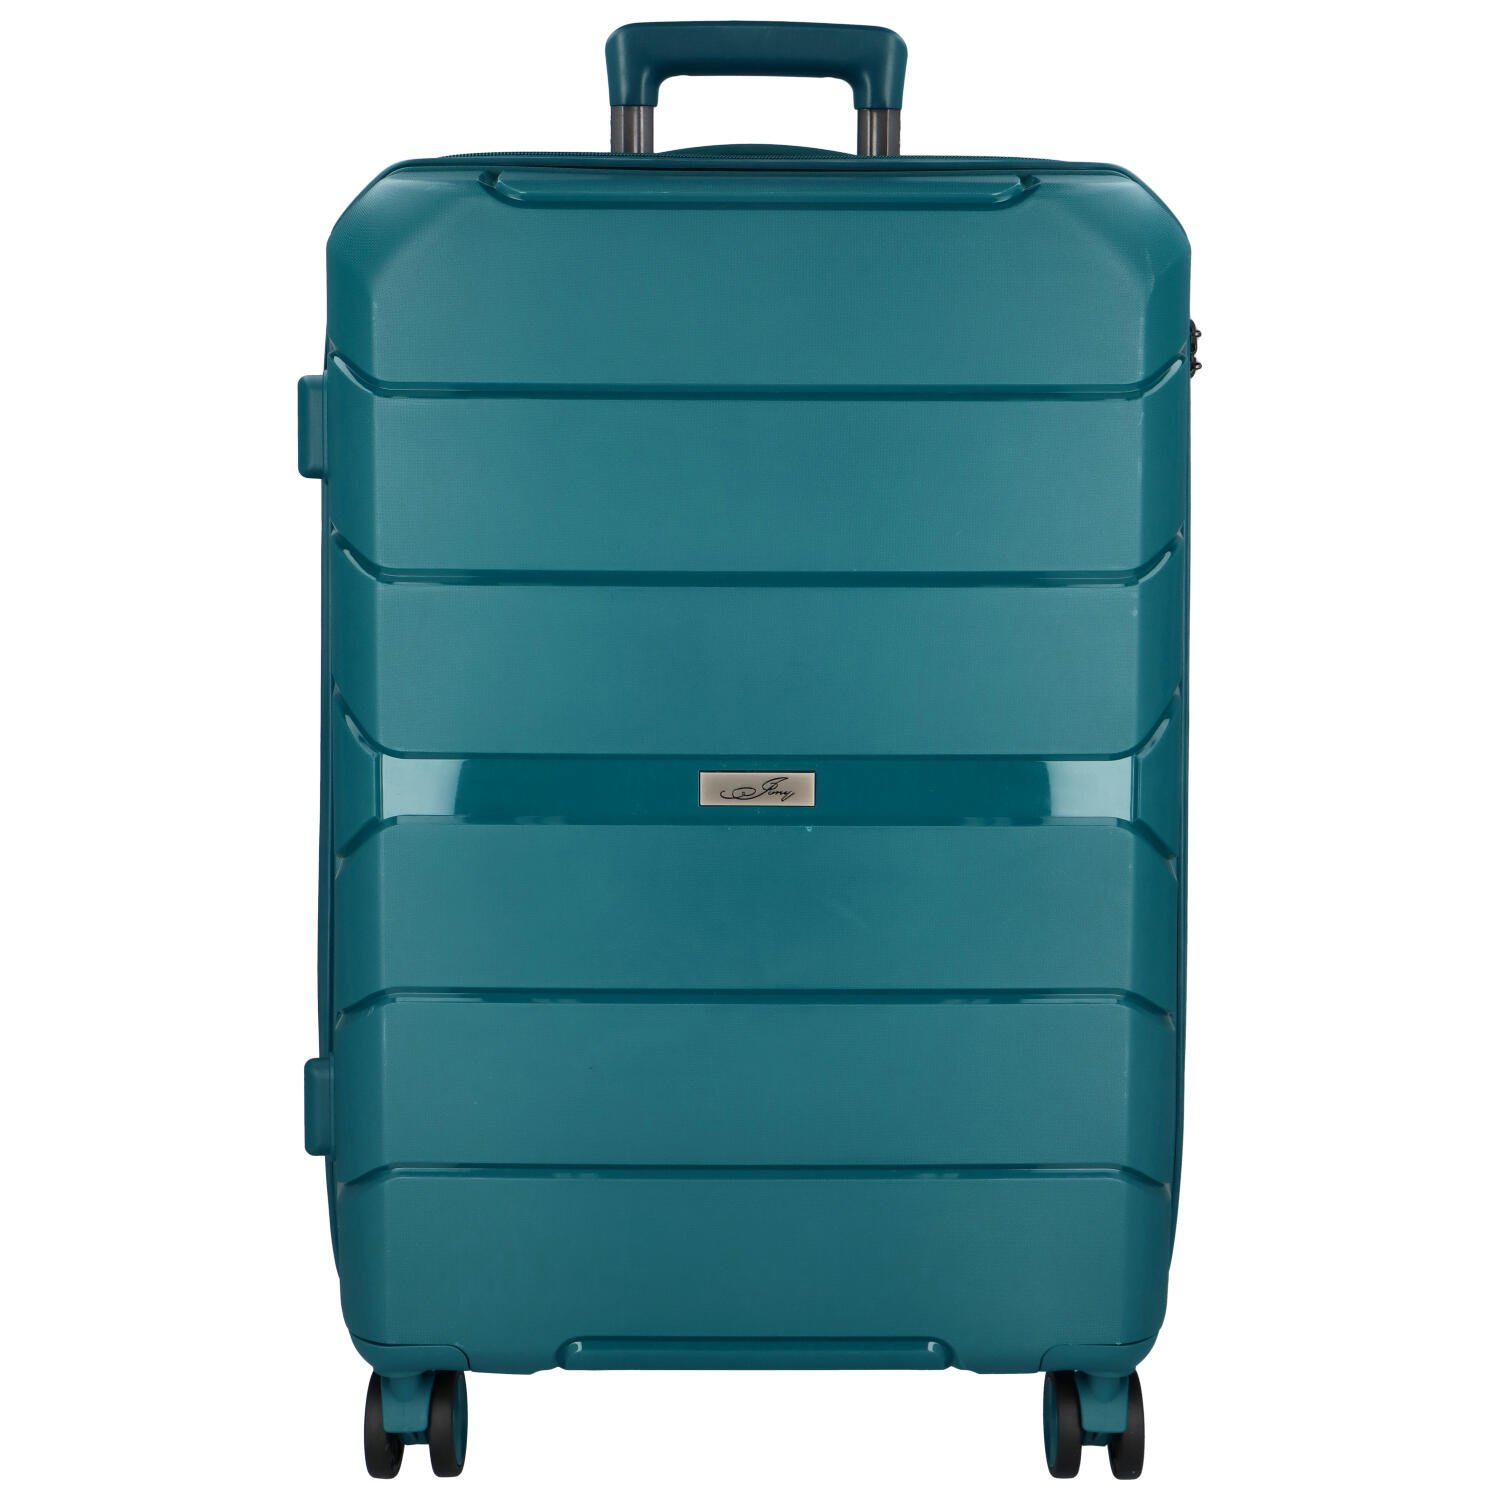 Cestovní plastový kufr Franco velikosti M, modrozelený